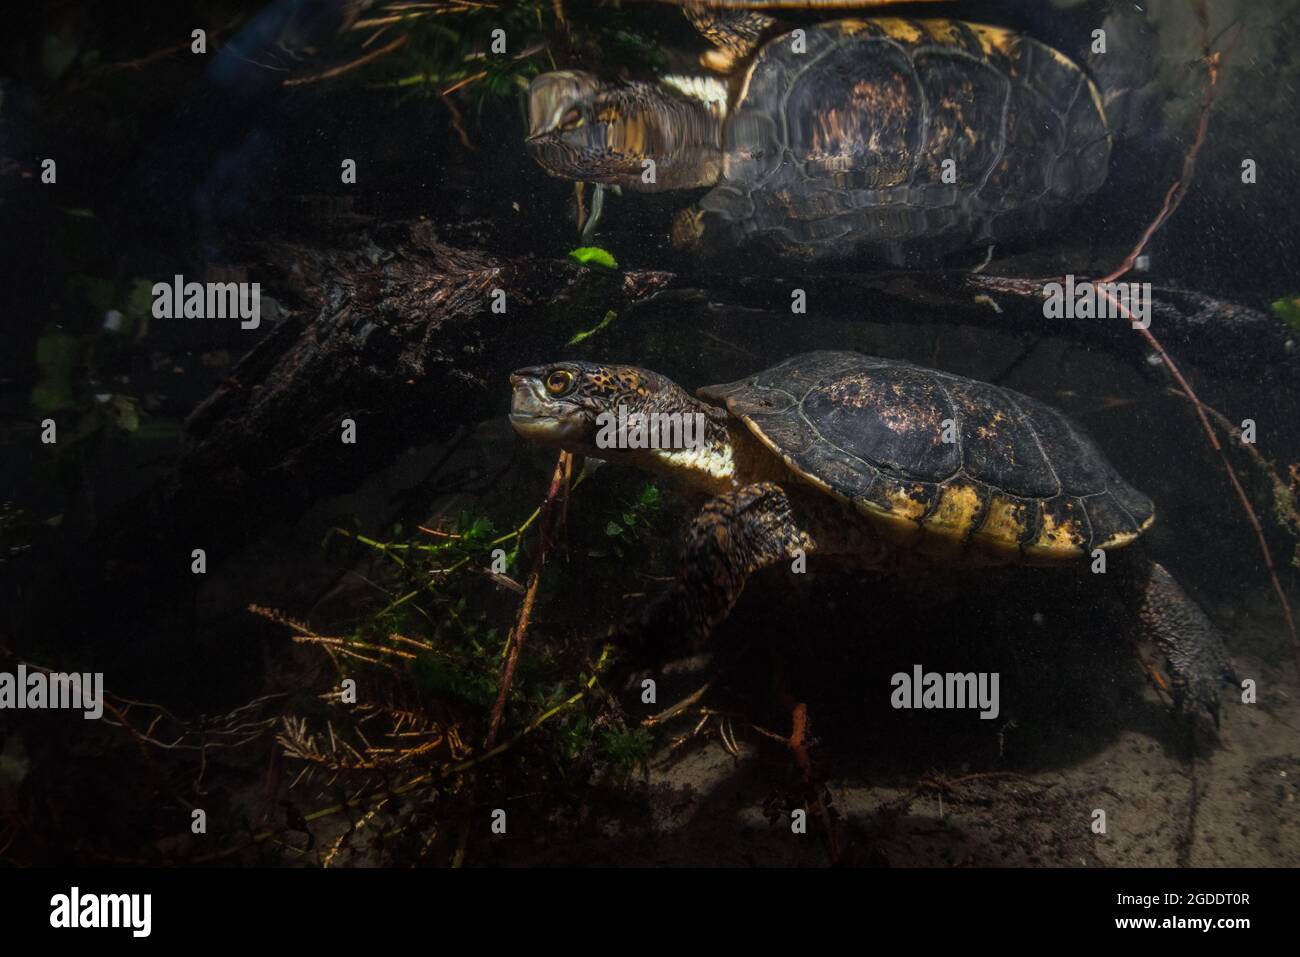 Actinemys marmorata - eine Schildkröte aus dem Nordwesten des Teichs, schwimmt unter Wasser in einem klaren kalifornischen Fluss. Diese einheimische Schildkrötenart gilt als bedroht. Stockfoto